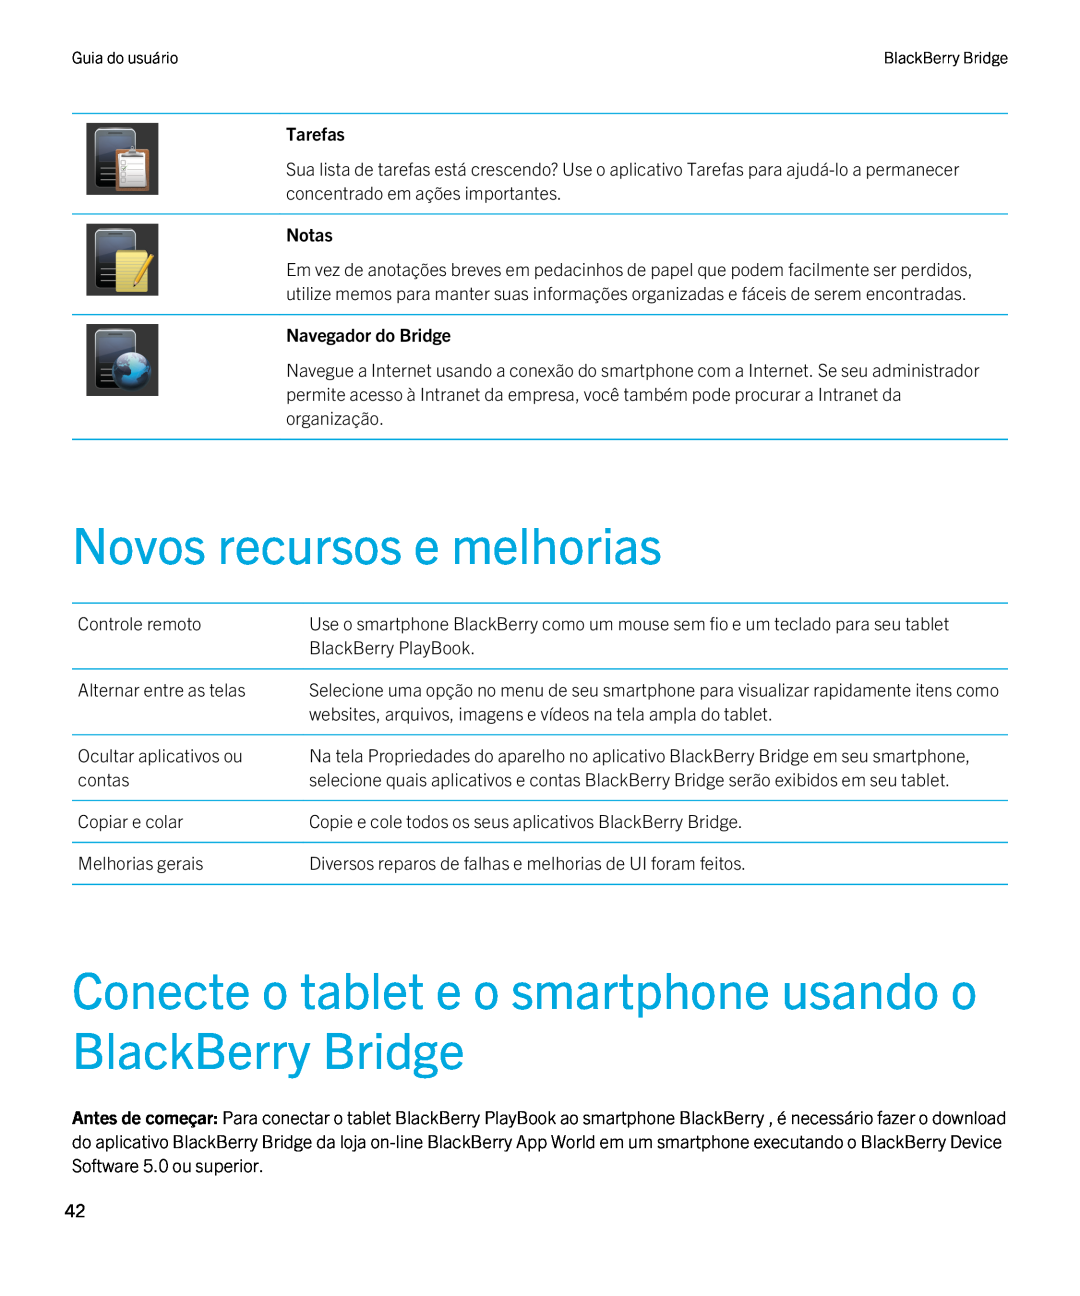 Blackberry 2.0.1 Novos recursos e melhorias, Conecte o tablet e o smartphone usando o BlackBerry Bridge, Tarefas, Notas 